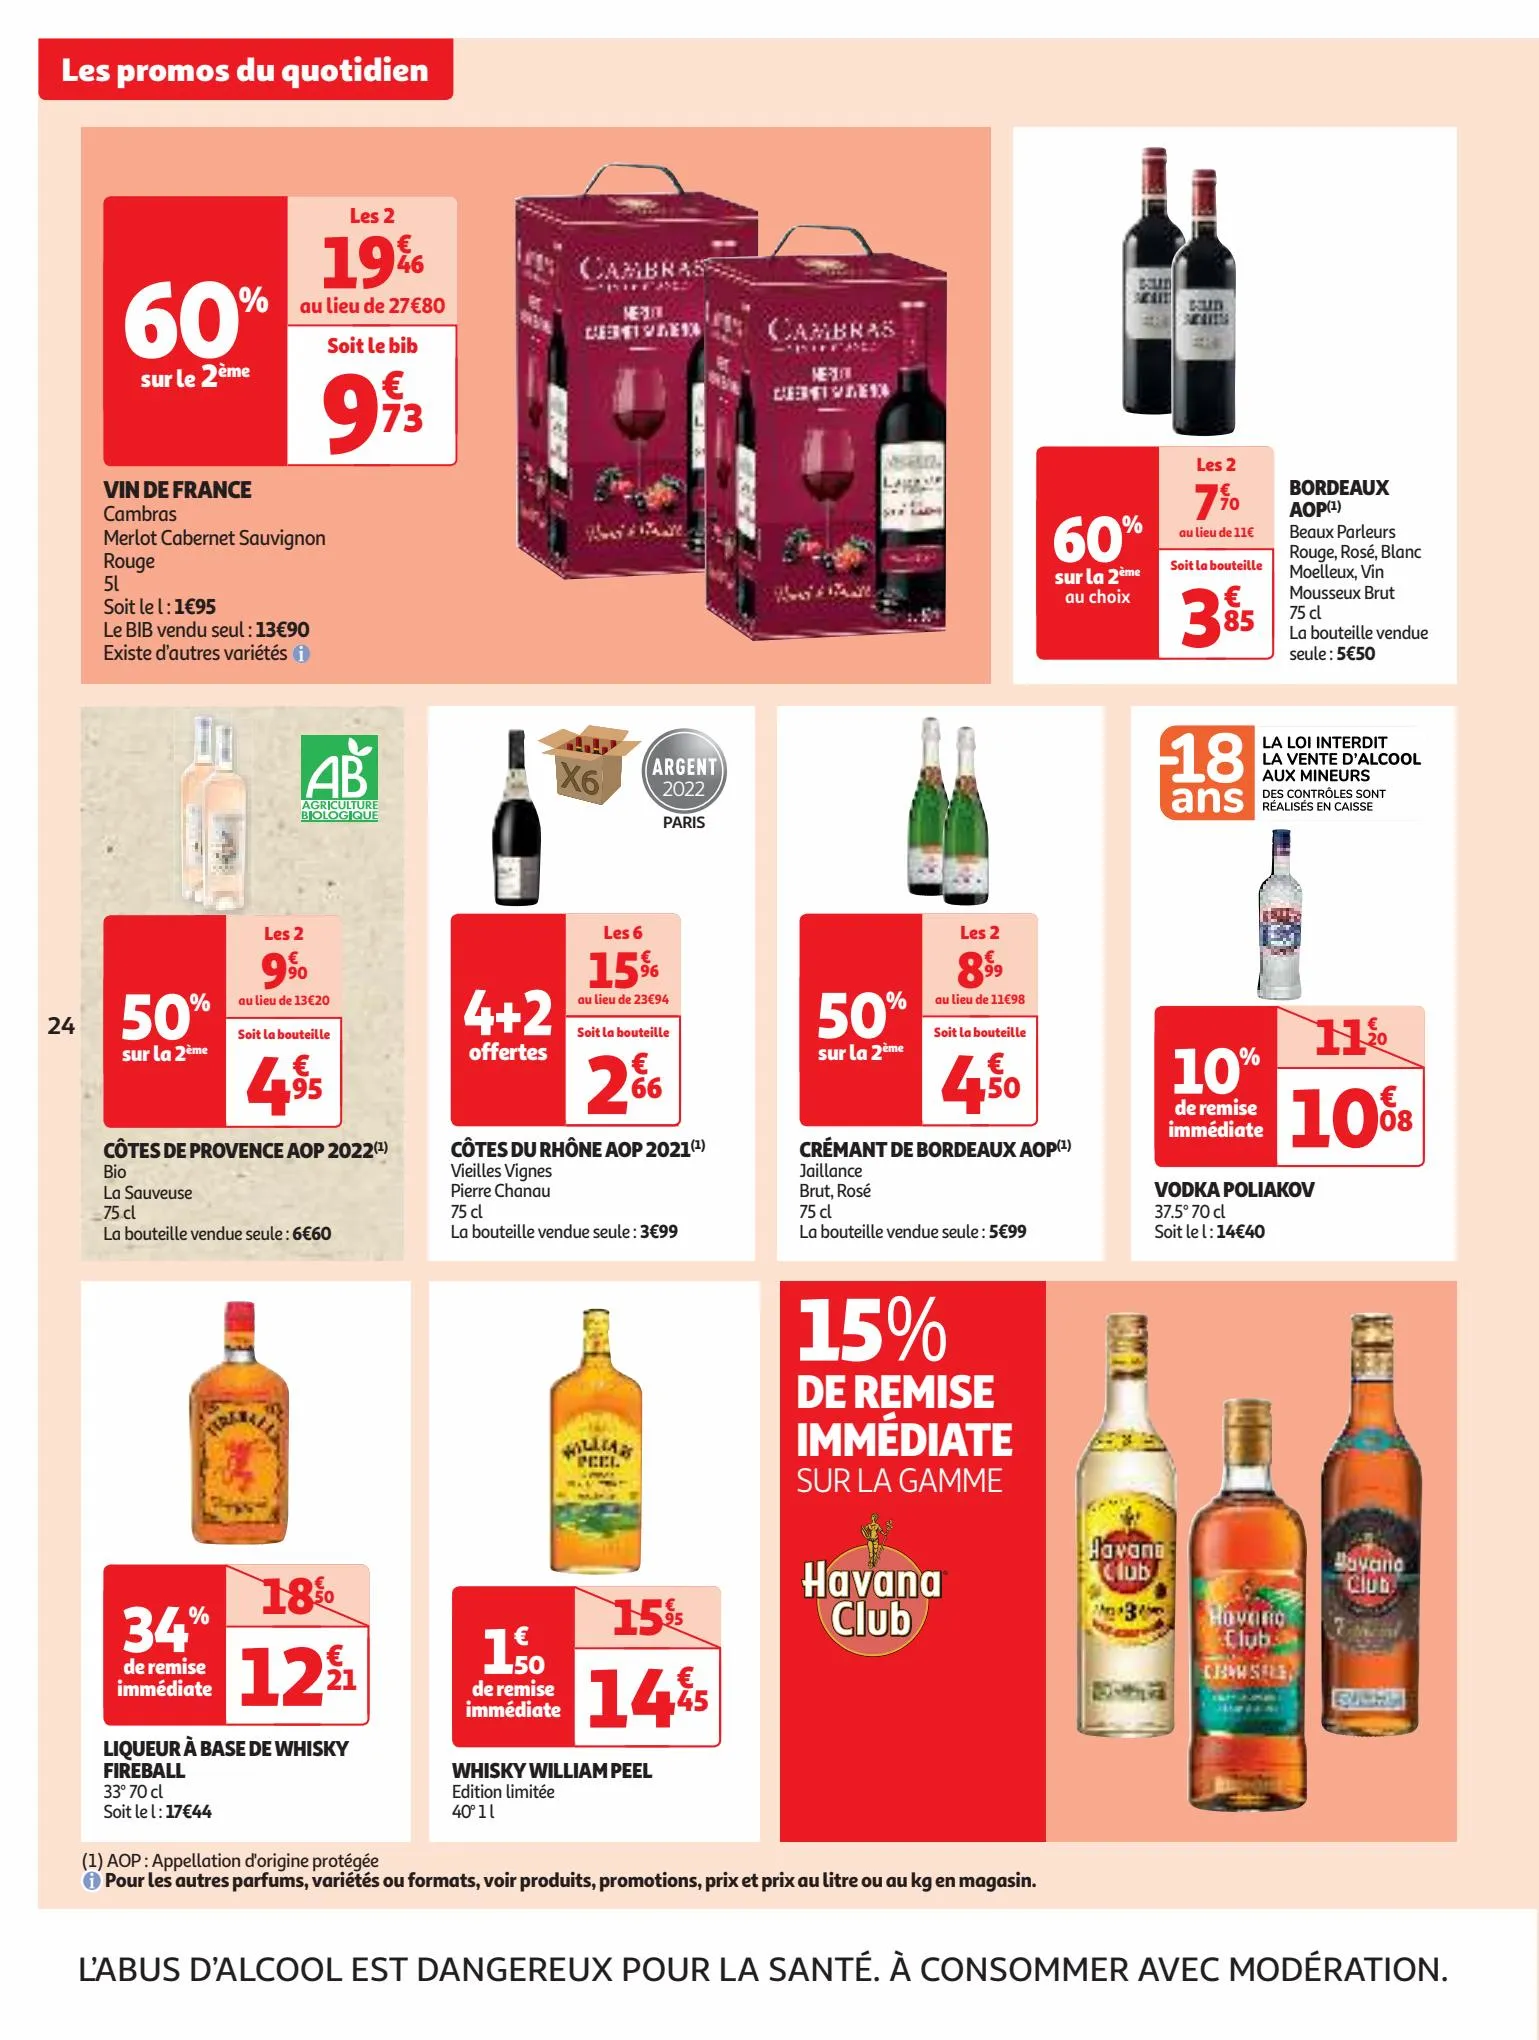 Catalogue Plein d'offres sur nos marques Auchan, page 00024